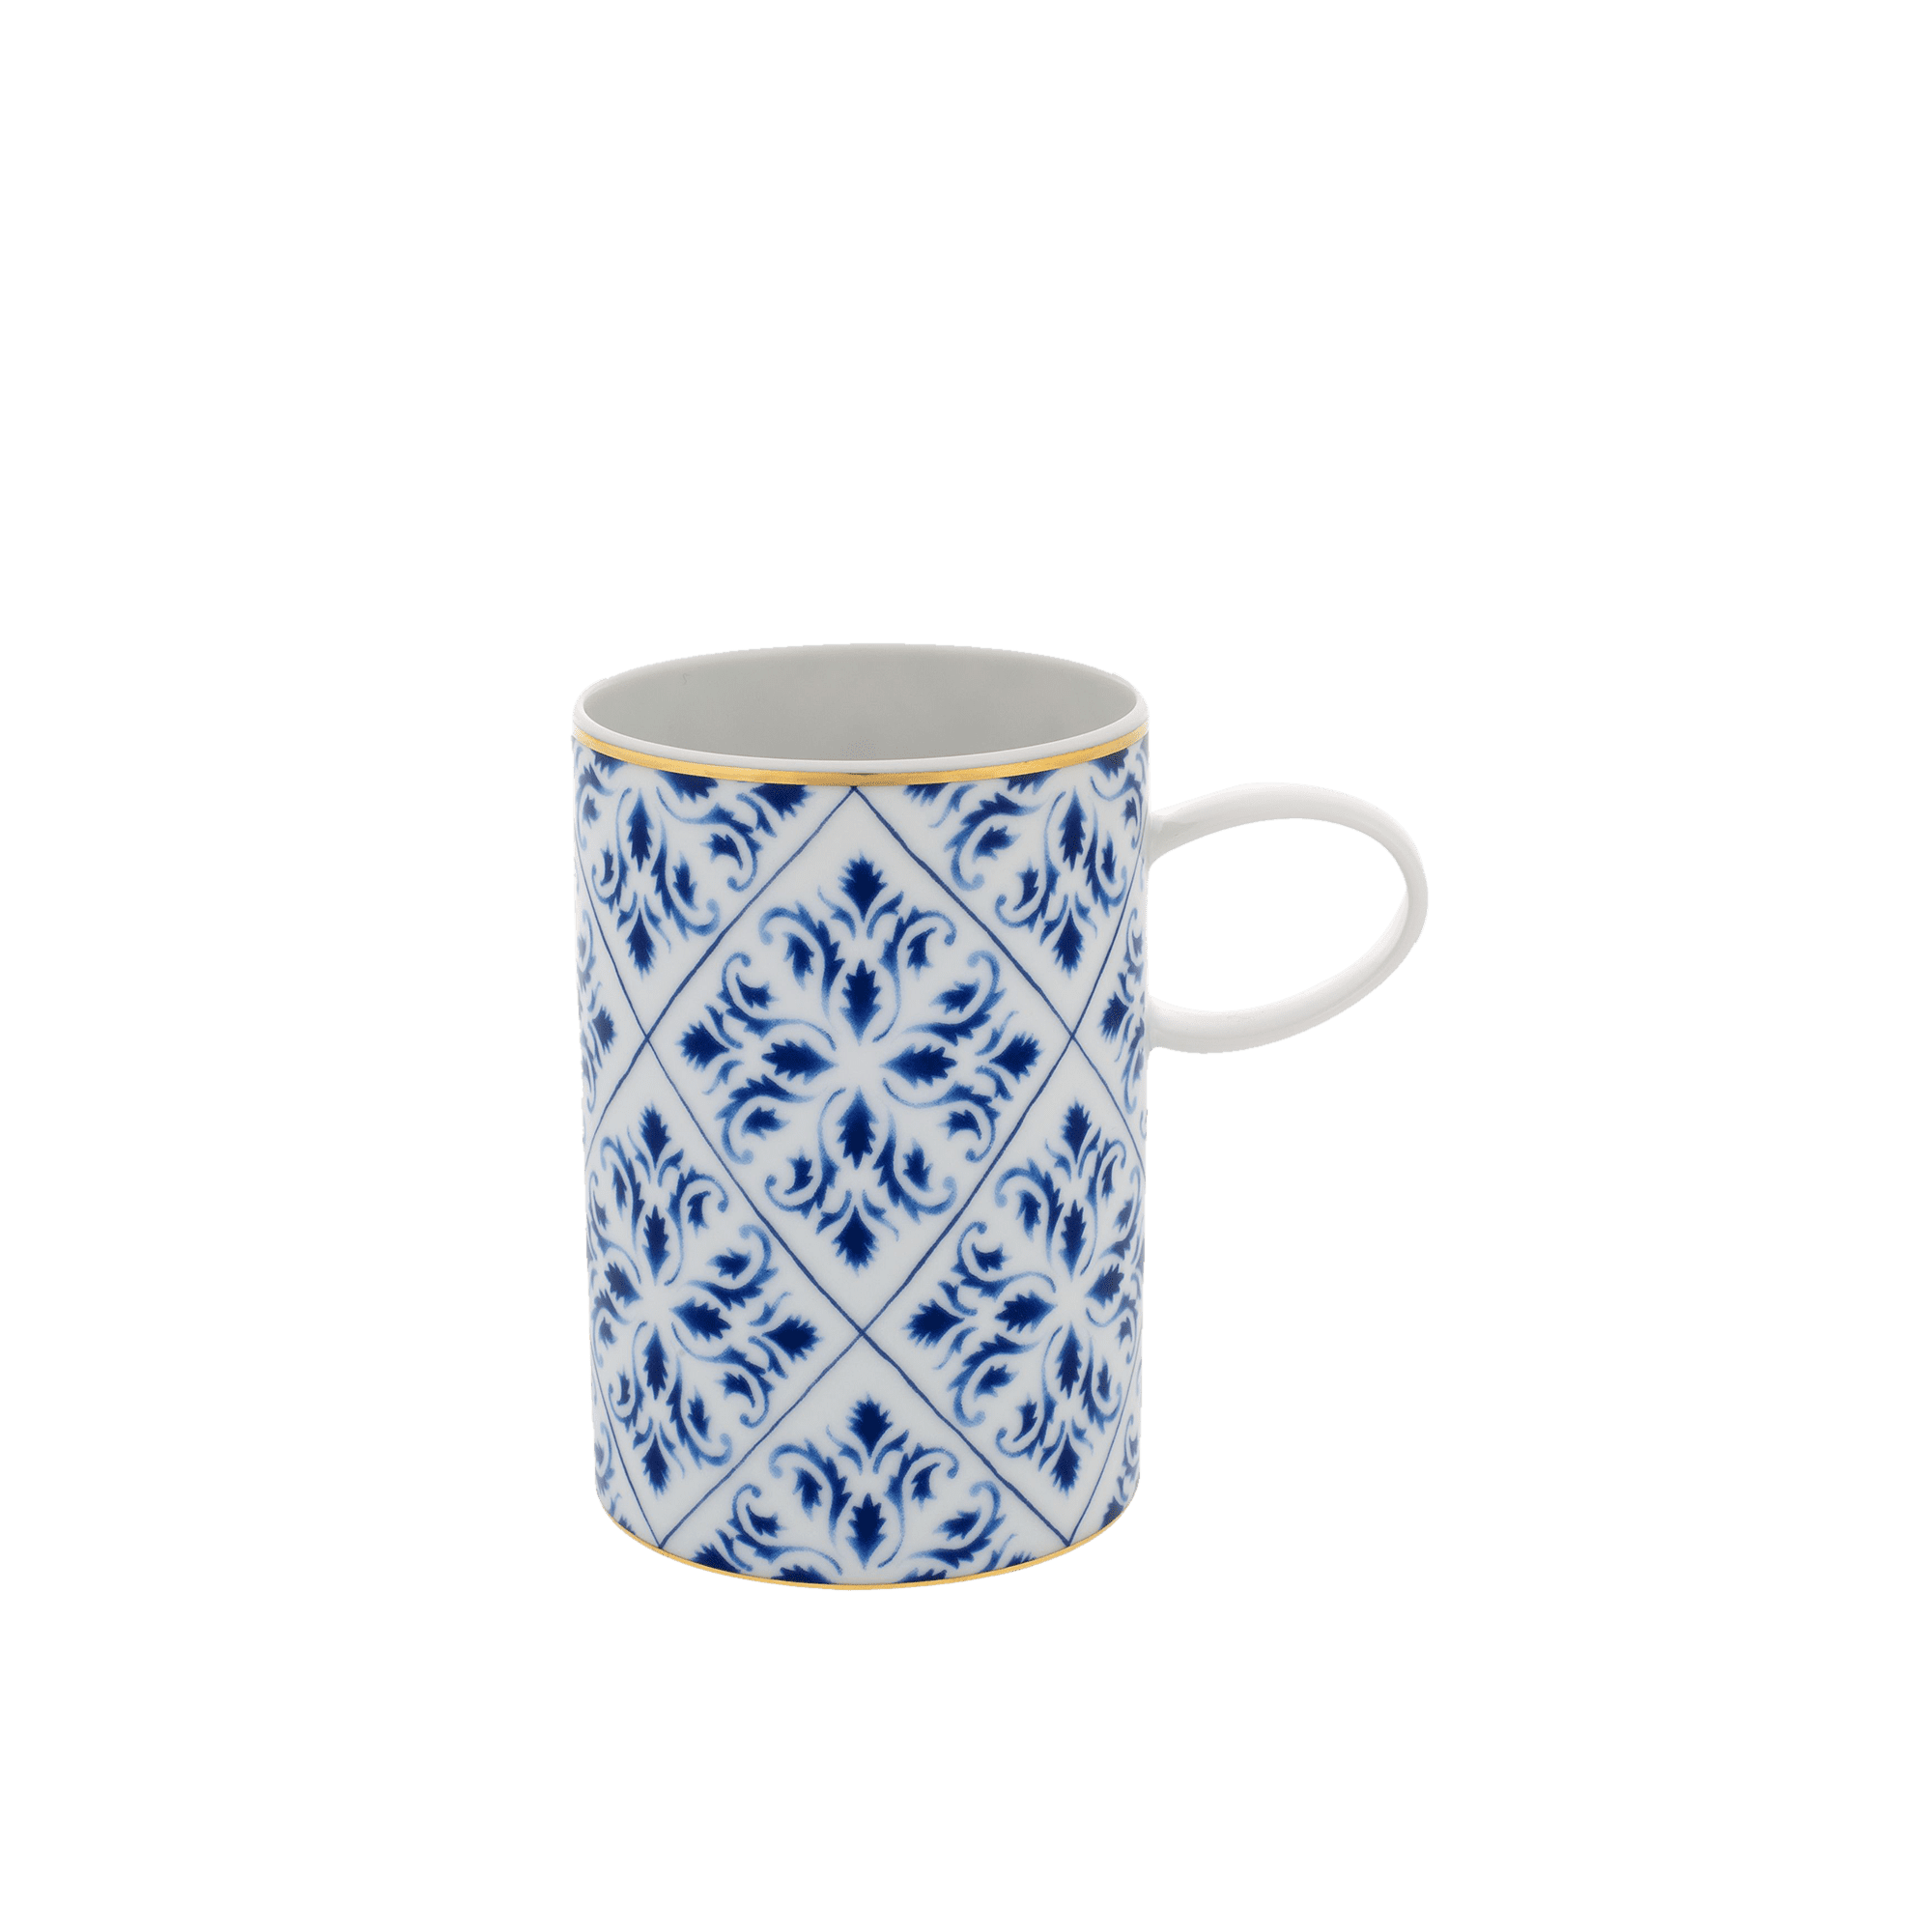 Transatlantica Coffee Mug